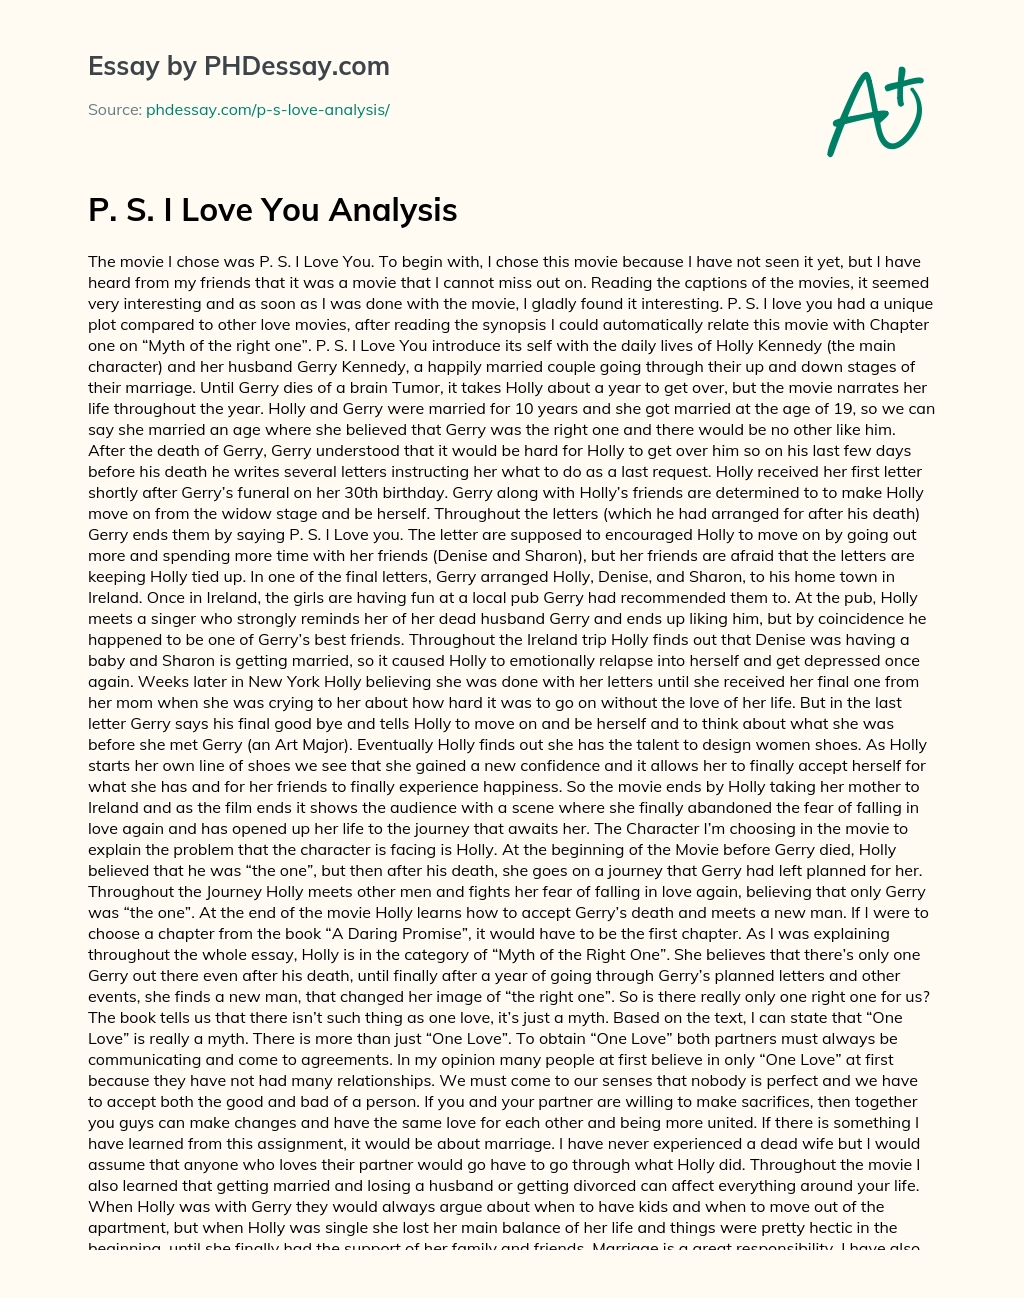 P. S. I Love You essay